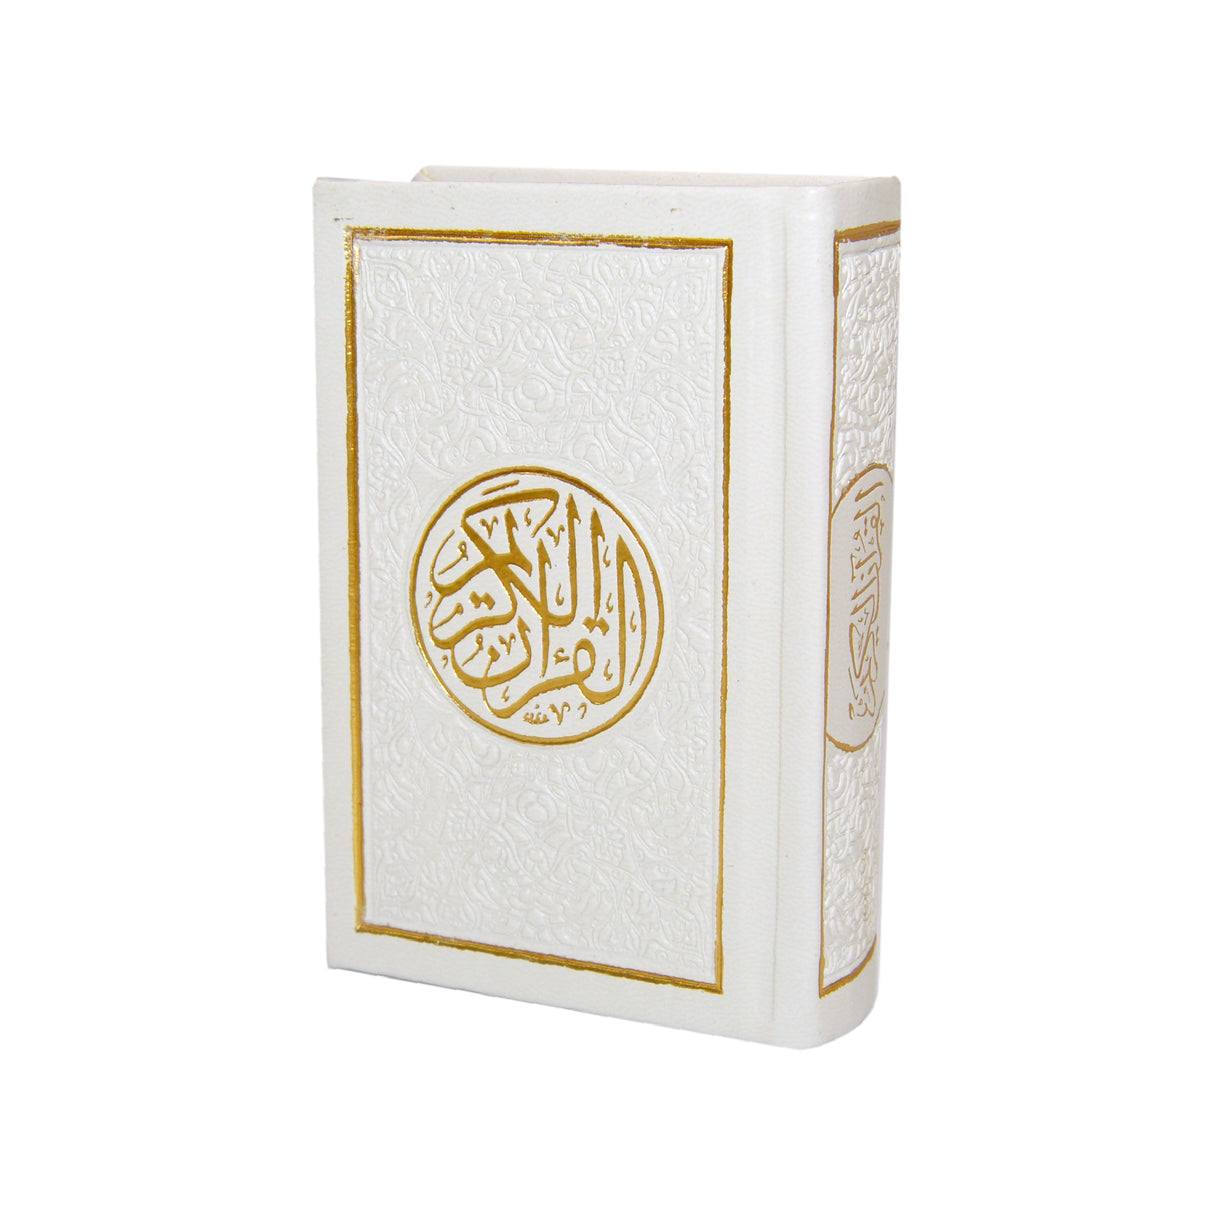 Arabic Quran 10X7 Cm Assorted Colors